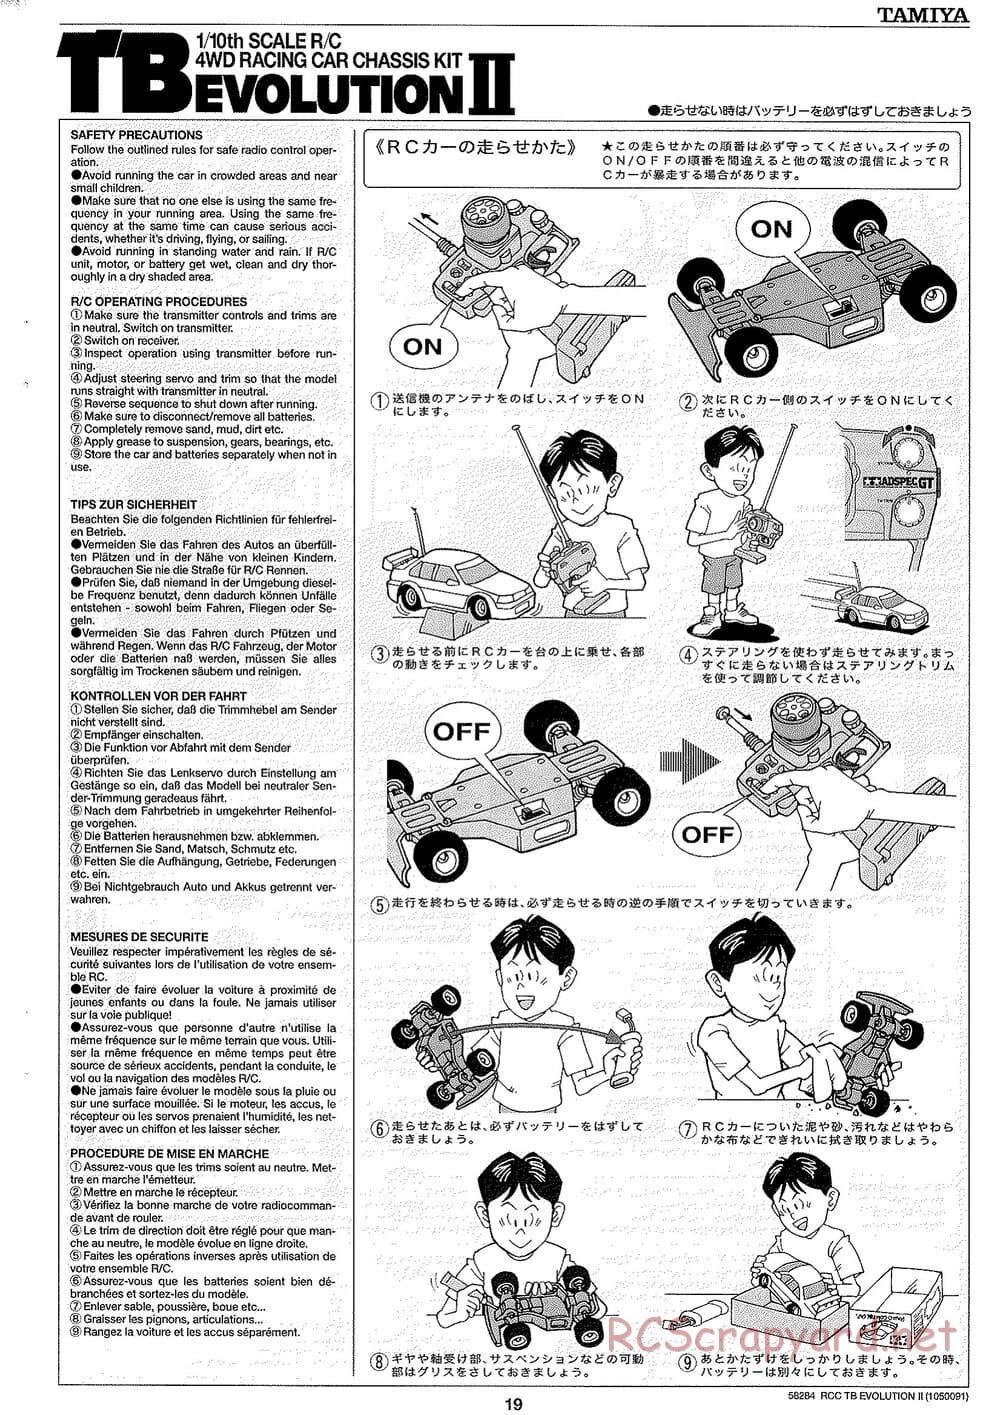 Tamiya - TB Evolution II Chassis - Manual - Page 19